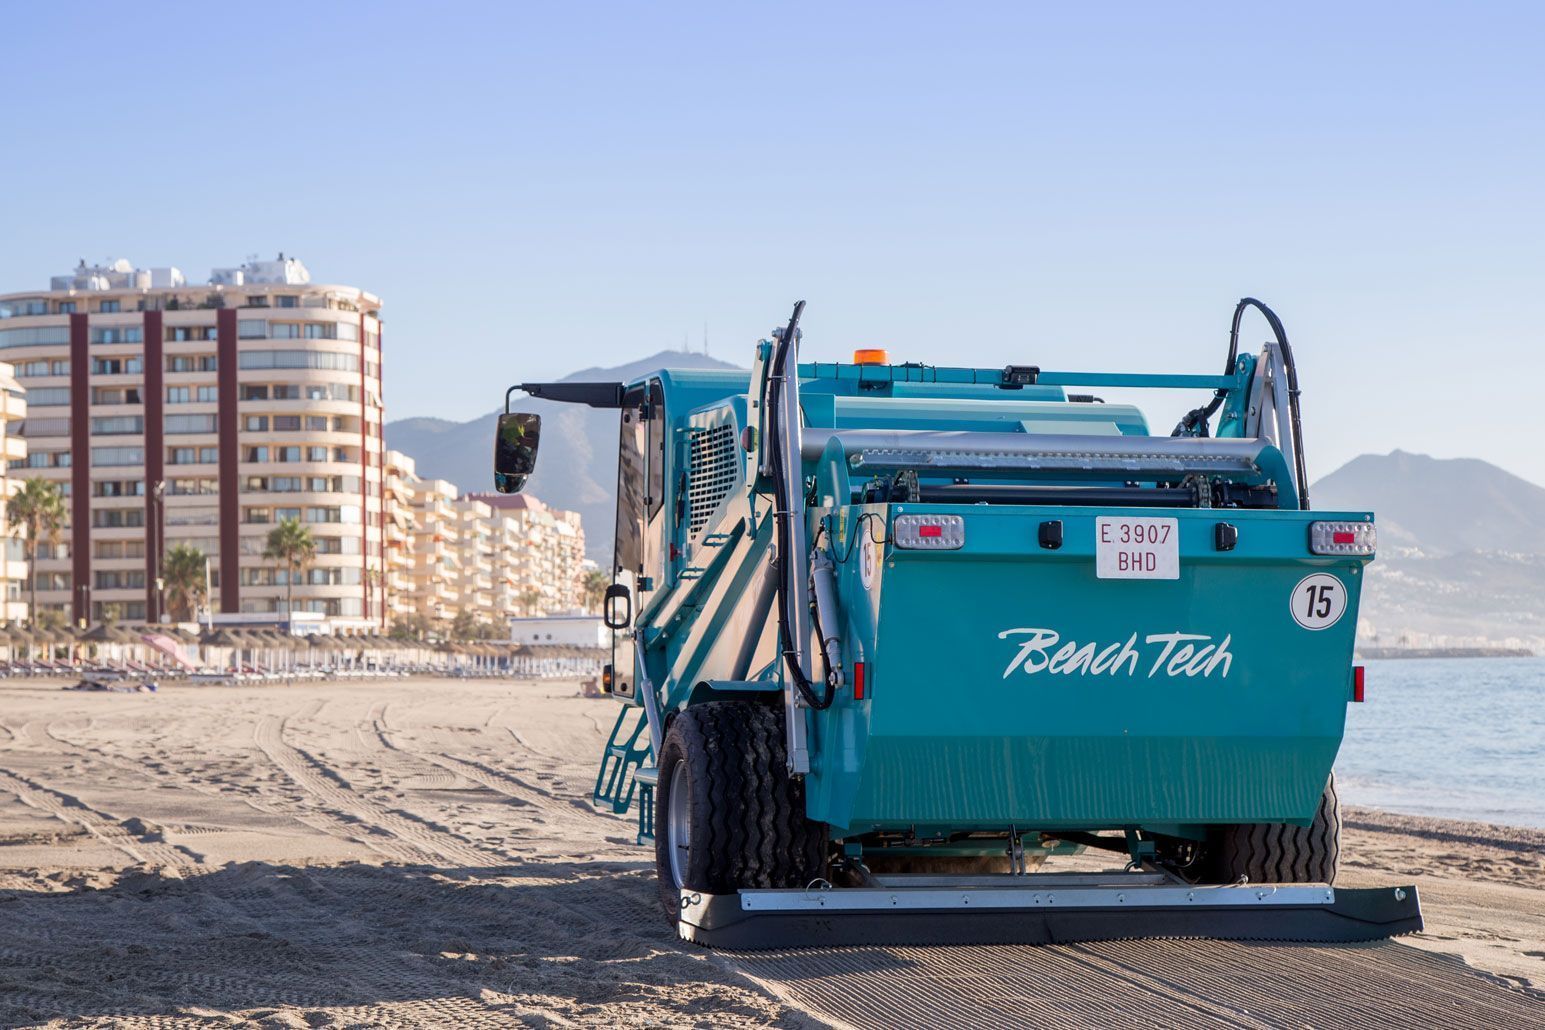 BeachTech 5500 cleaning beaches